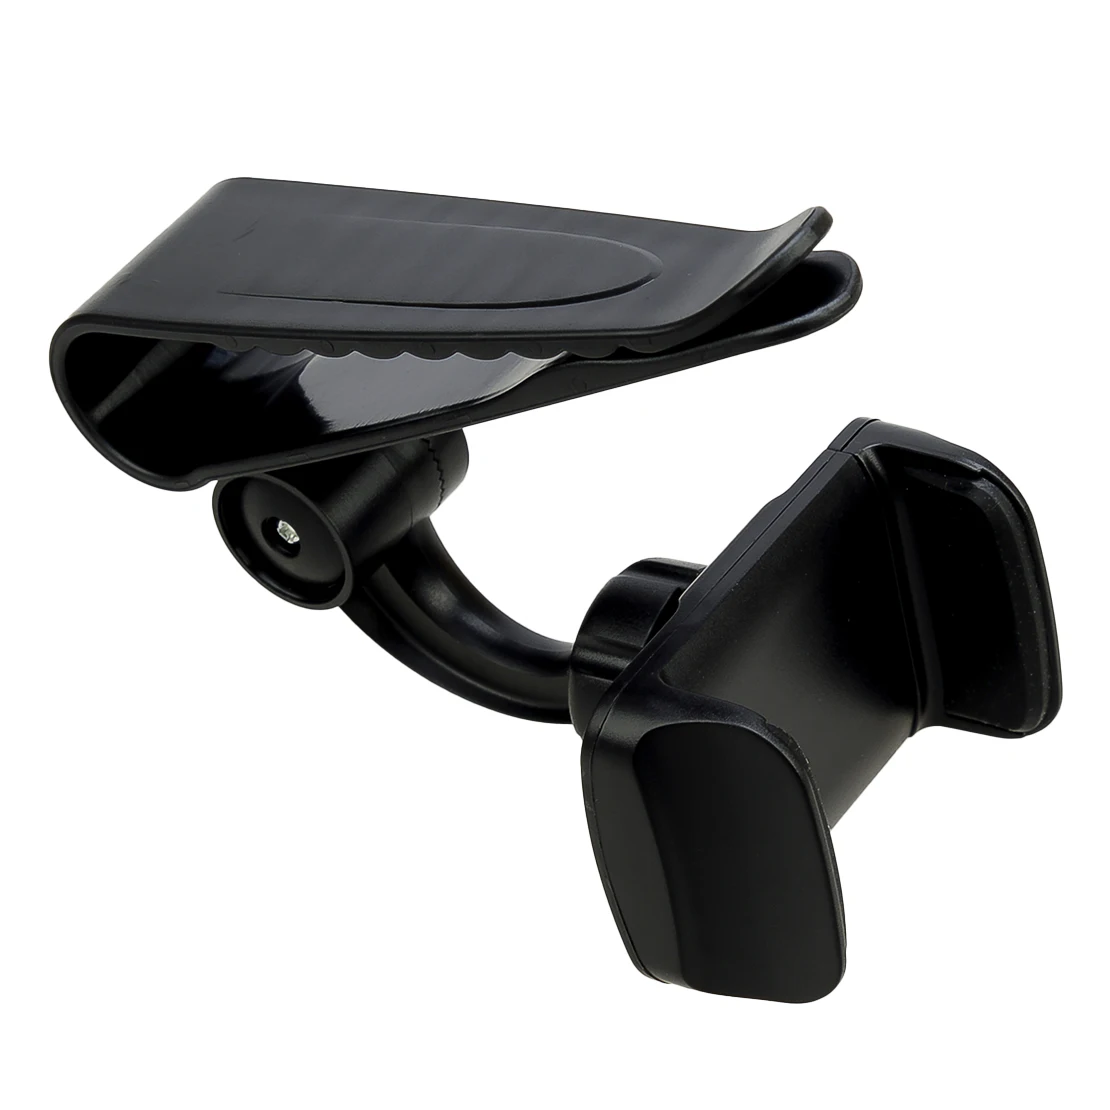 אוניברסלי שחור 360° Rotatable המכונית מגן השמש הטלפון הר מחזיק עם קליפ פלסטיק ABS - 2